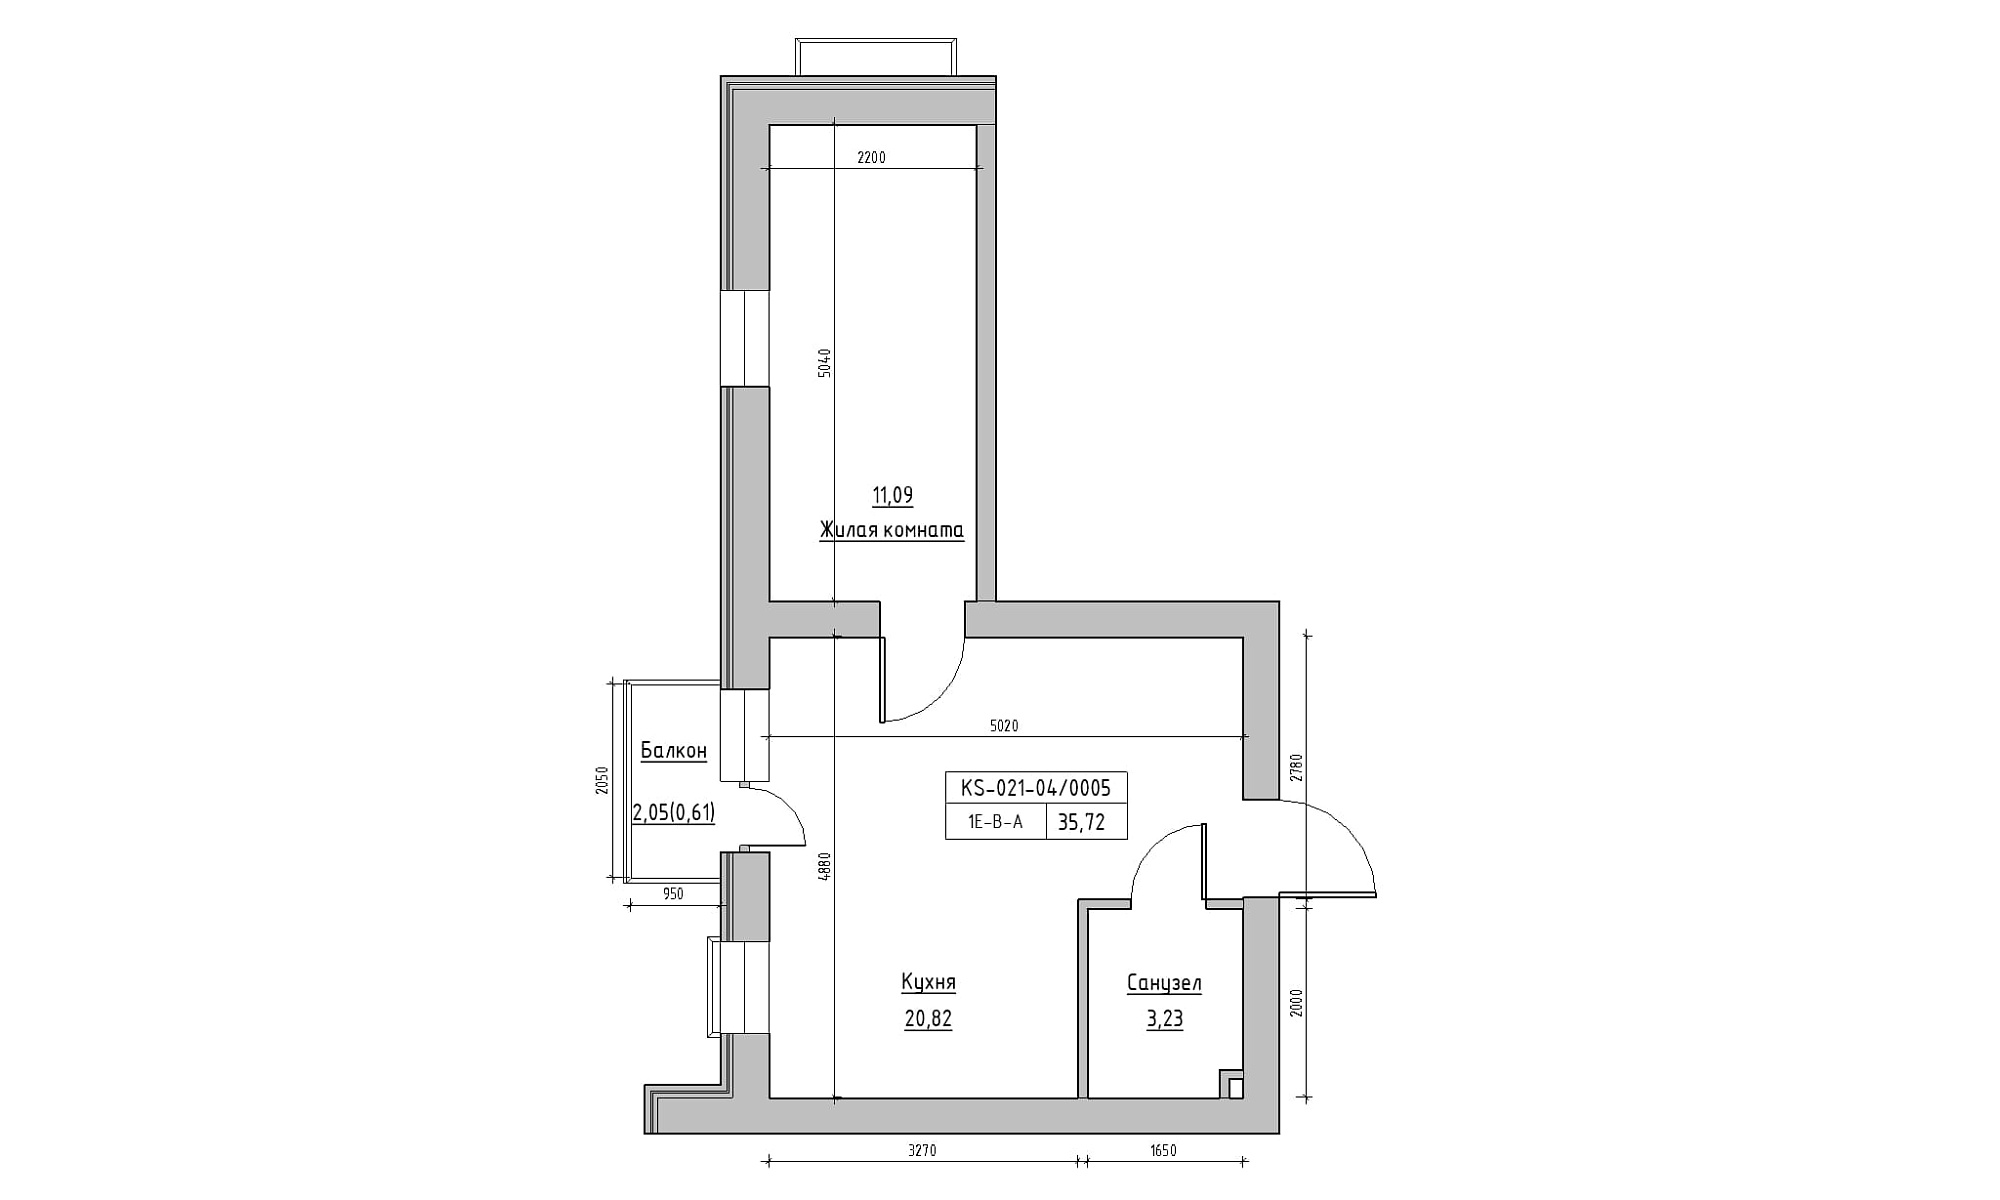 Планування 1-к квартира площею 35.72м2, KS-021-04/0005.